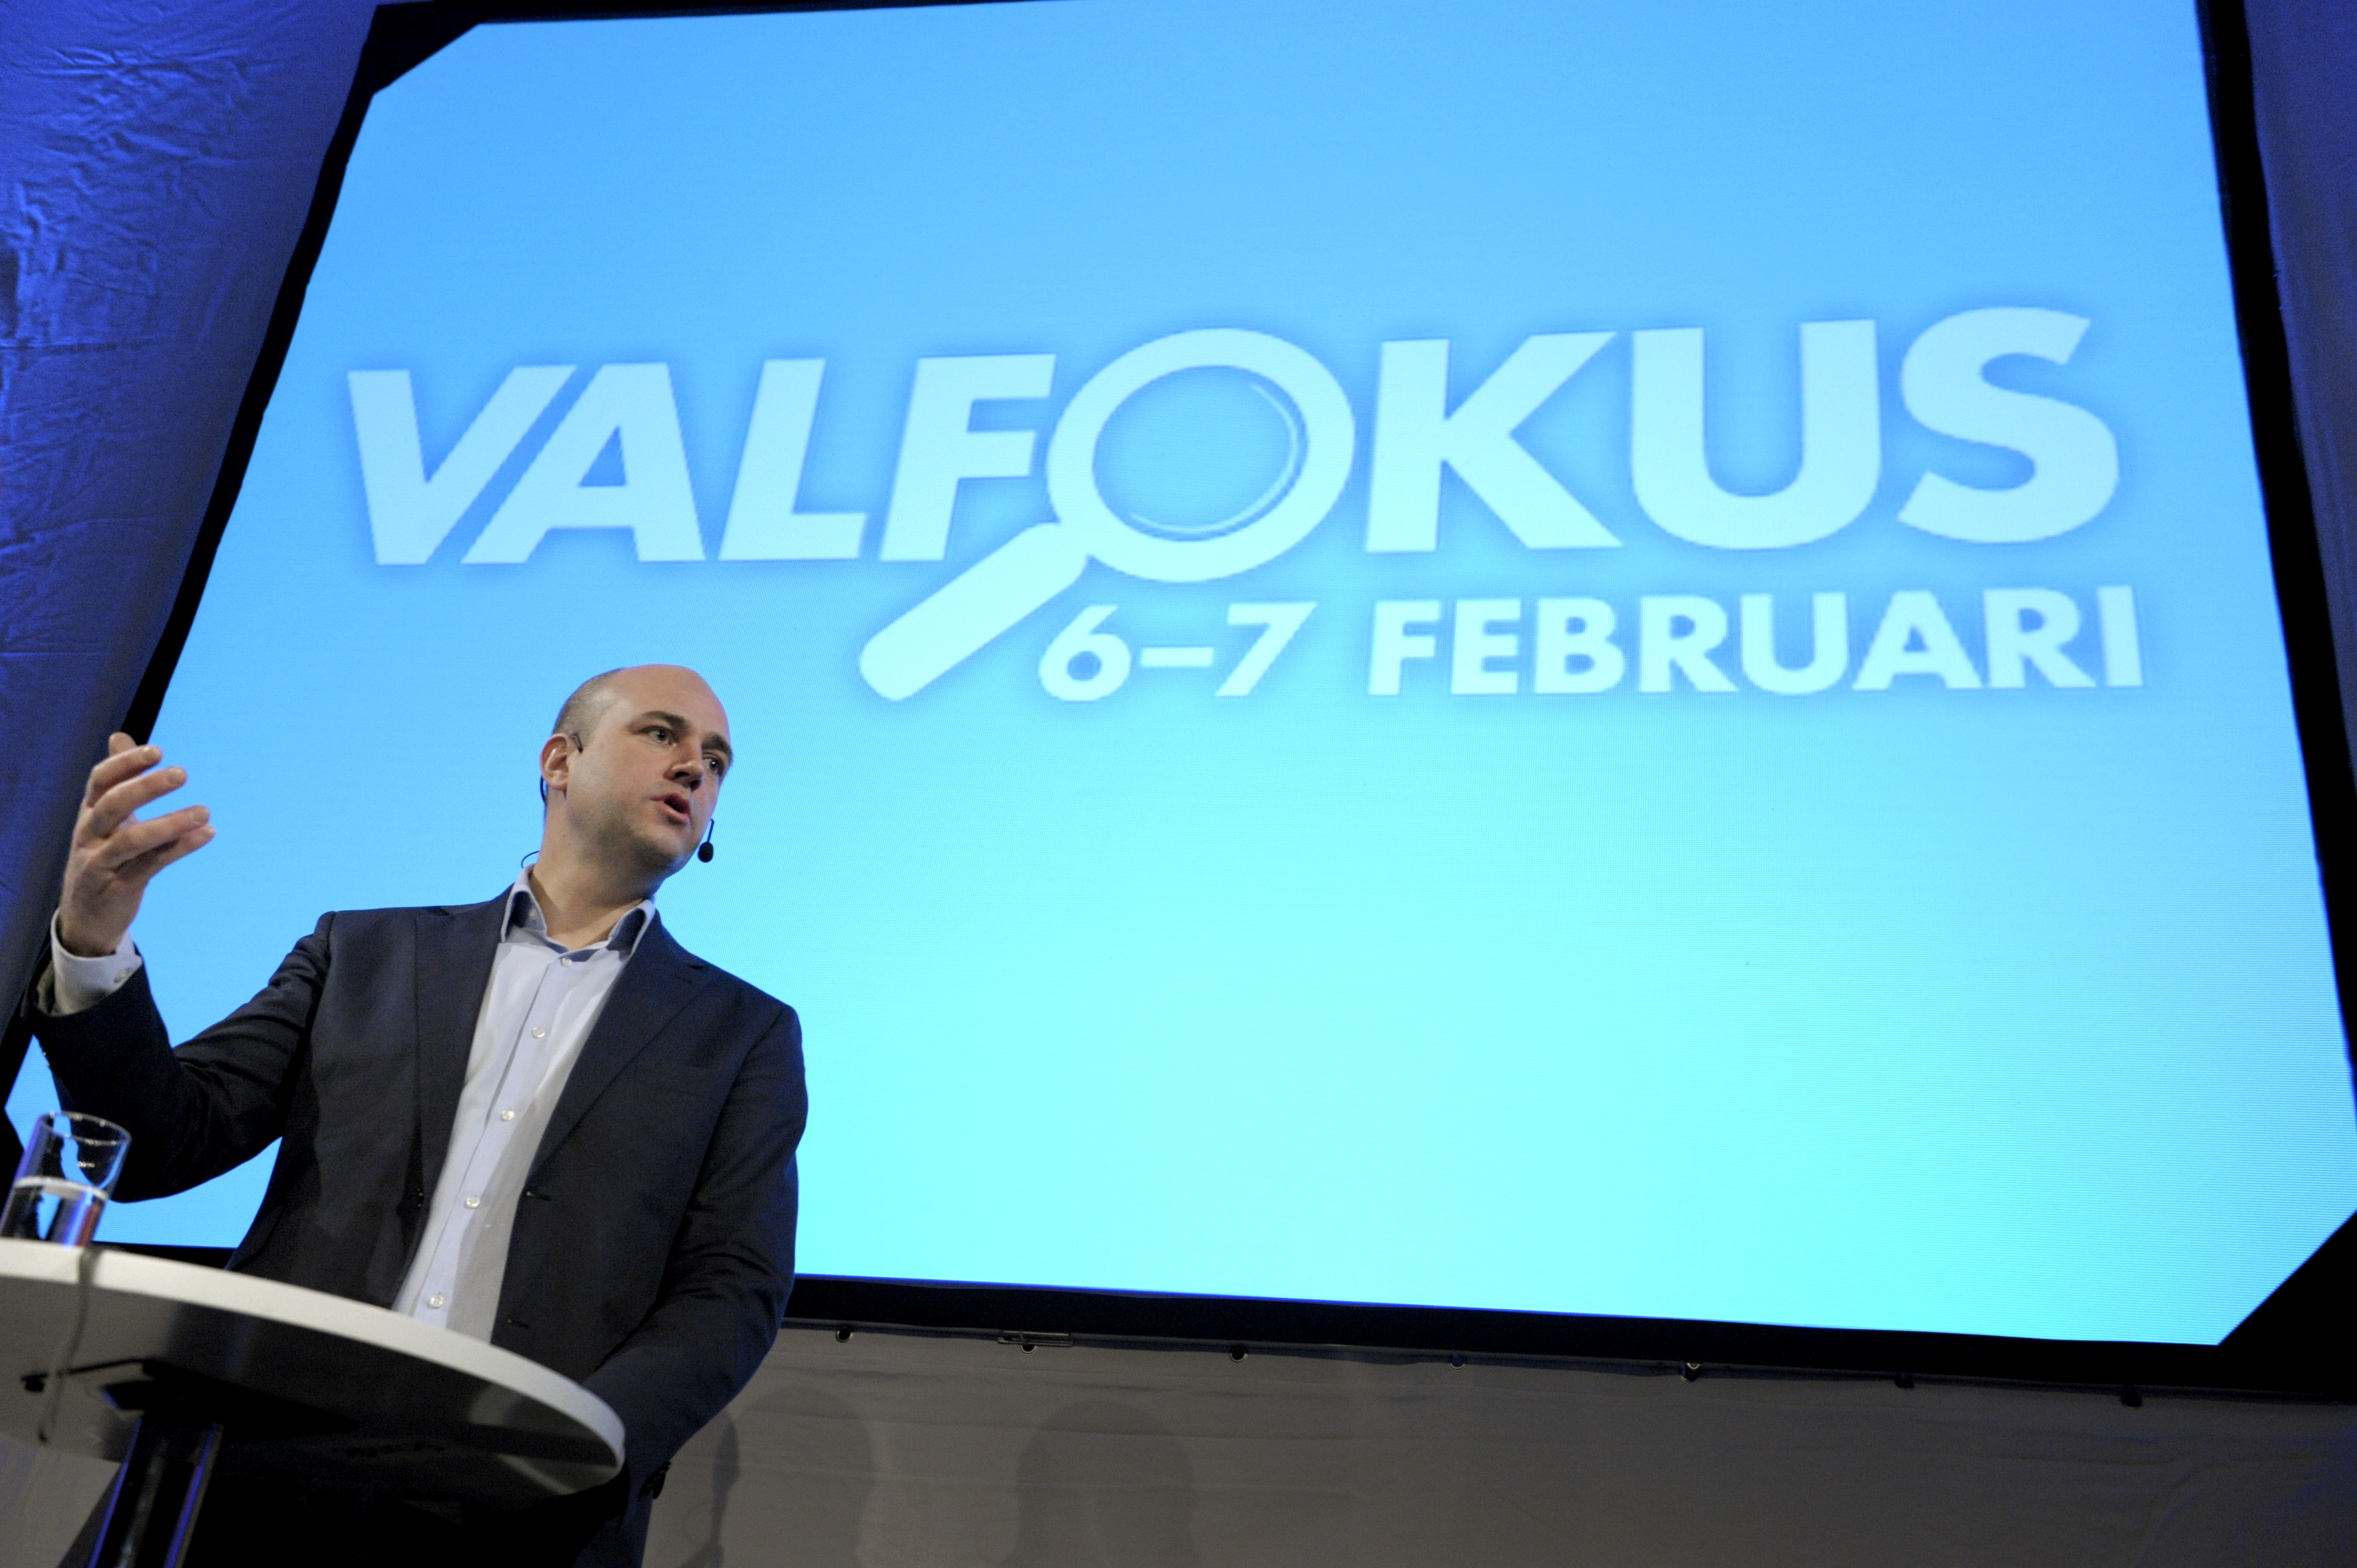 Regeringen, Alliansen, Riksdagsvalet 2010, Politik, Fredrik Reinfeldt